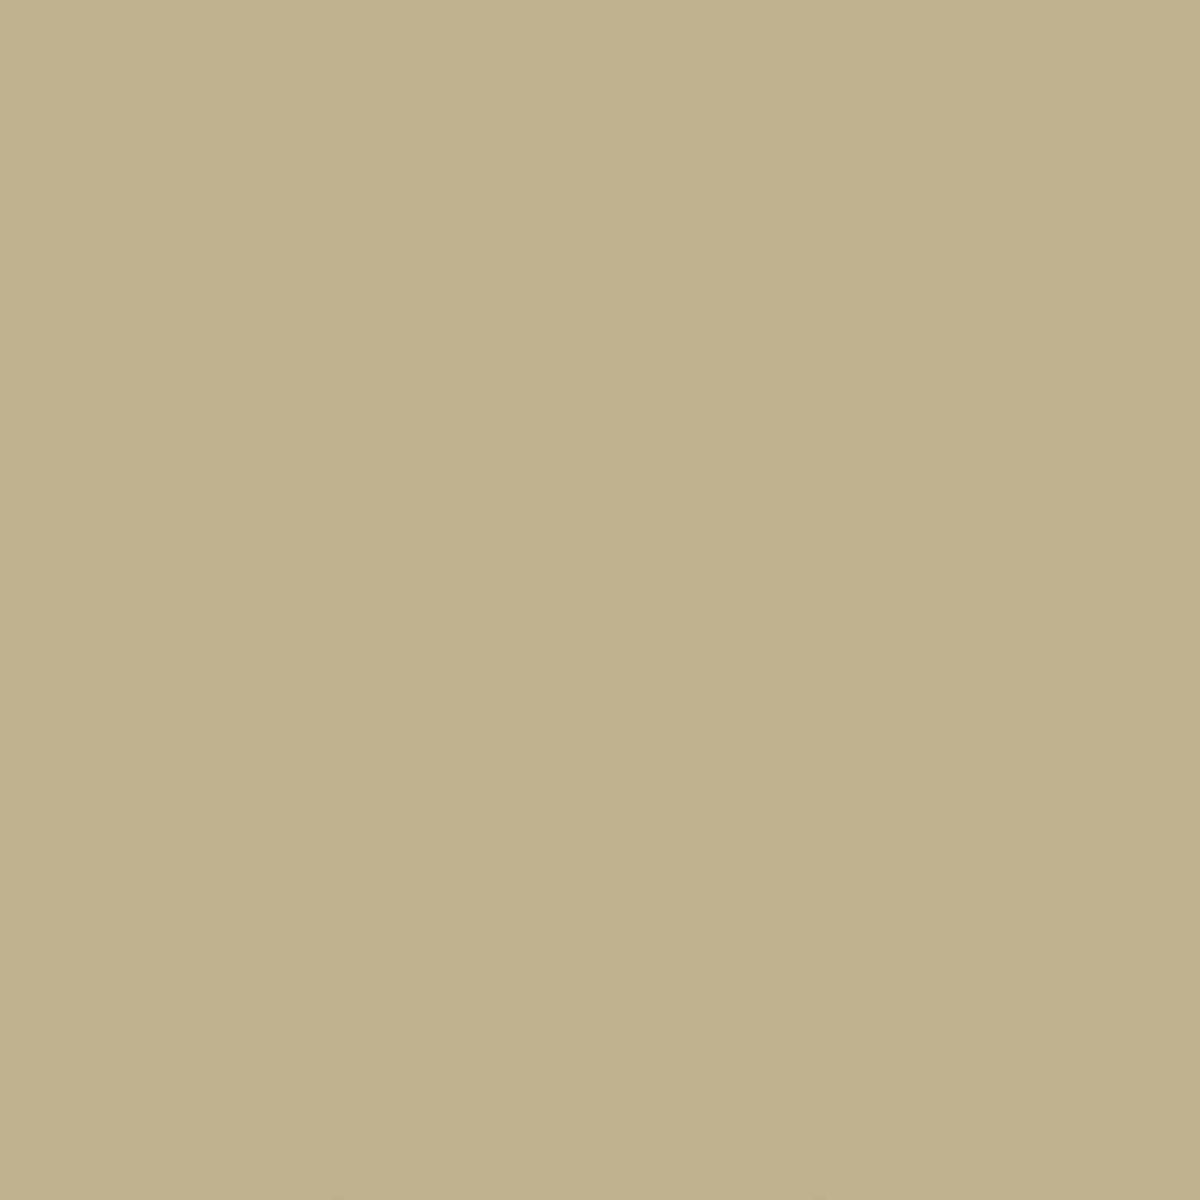 Χρώμα ξύλου Little Greene | Roman Plaster 31 LITTLE GREENE - ROMAN PLASTER (31) 2,5lt 91073